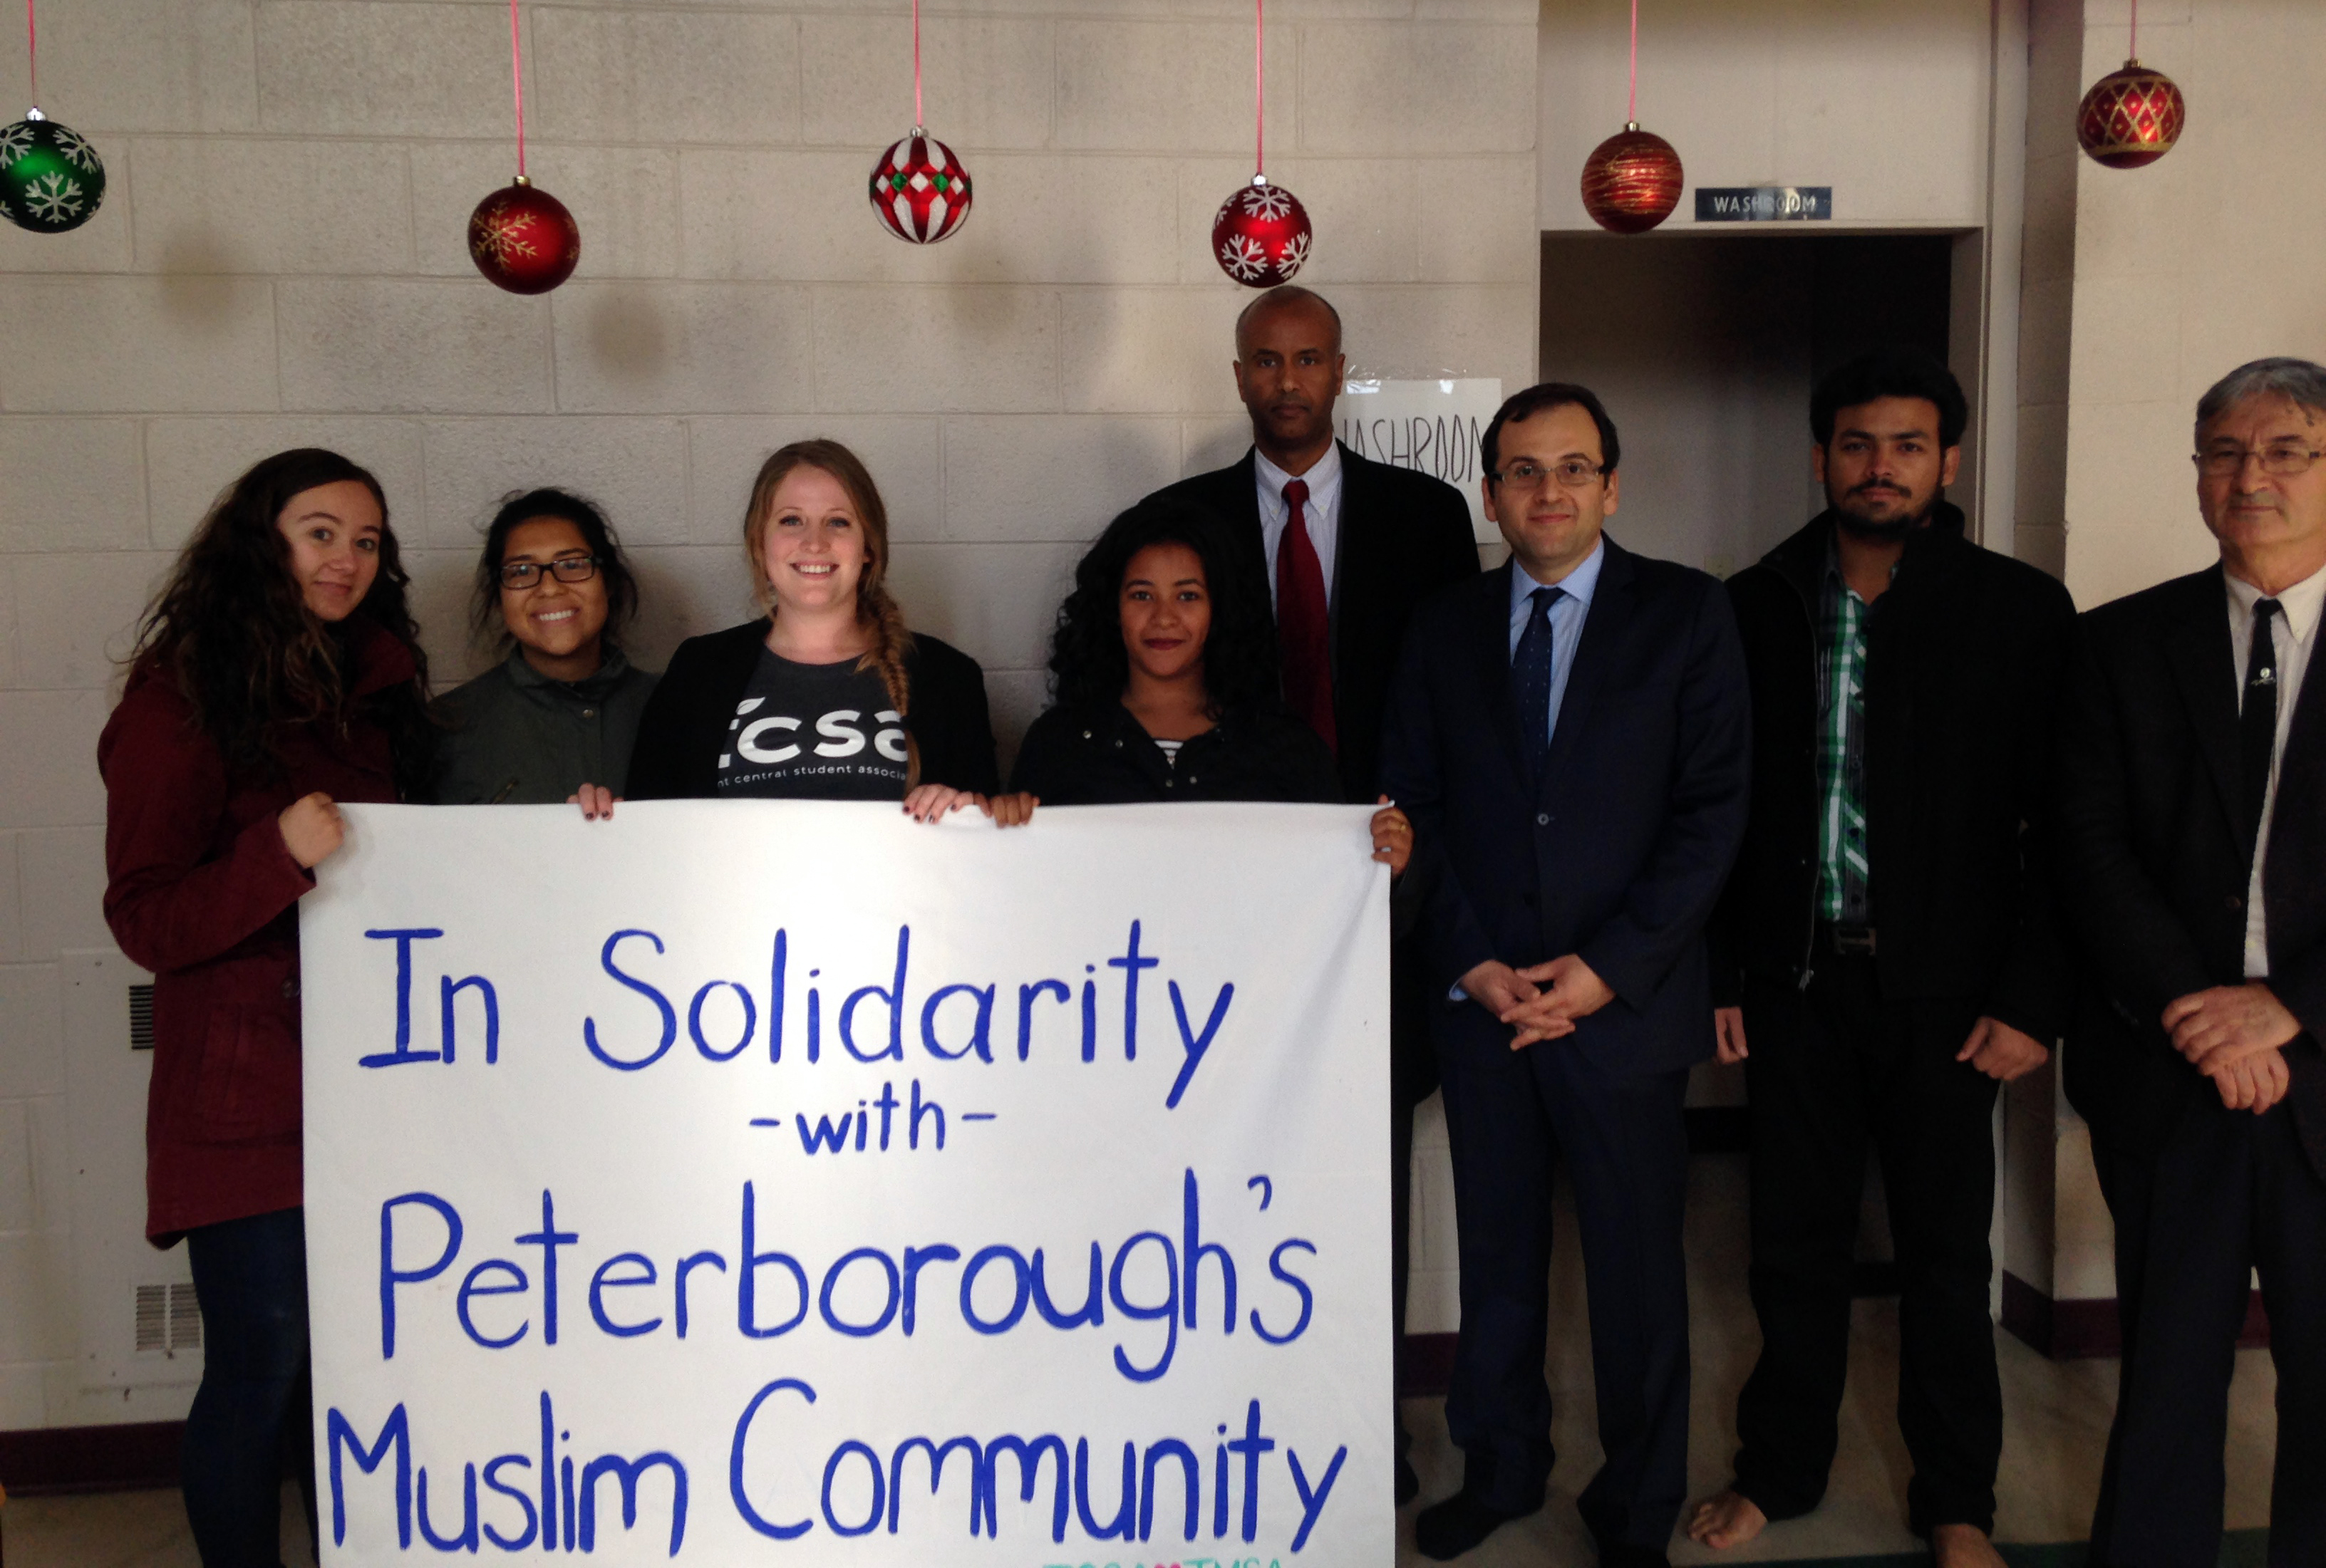 kundaklanan camiye destek veren kanadalilardan bir grup